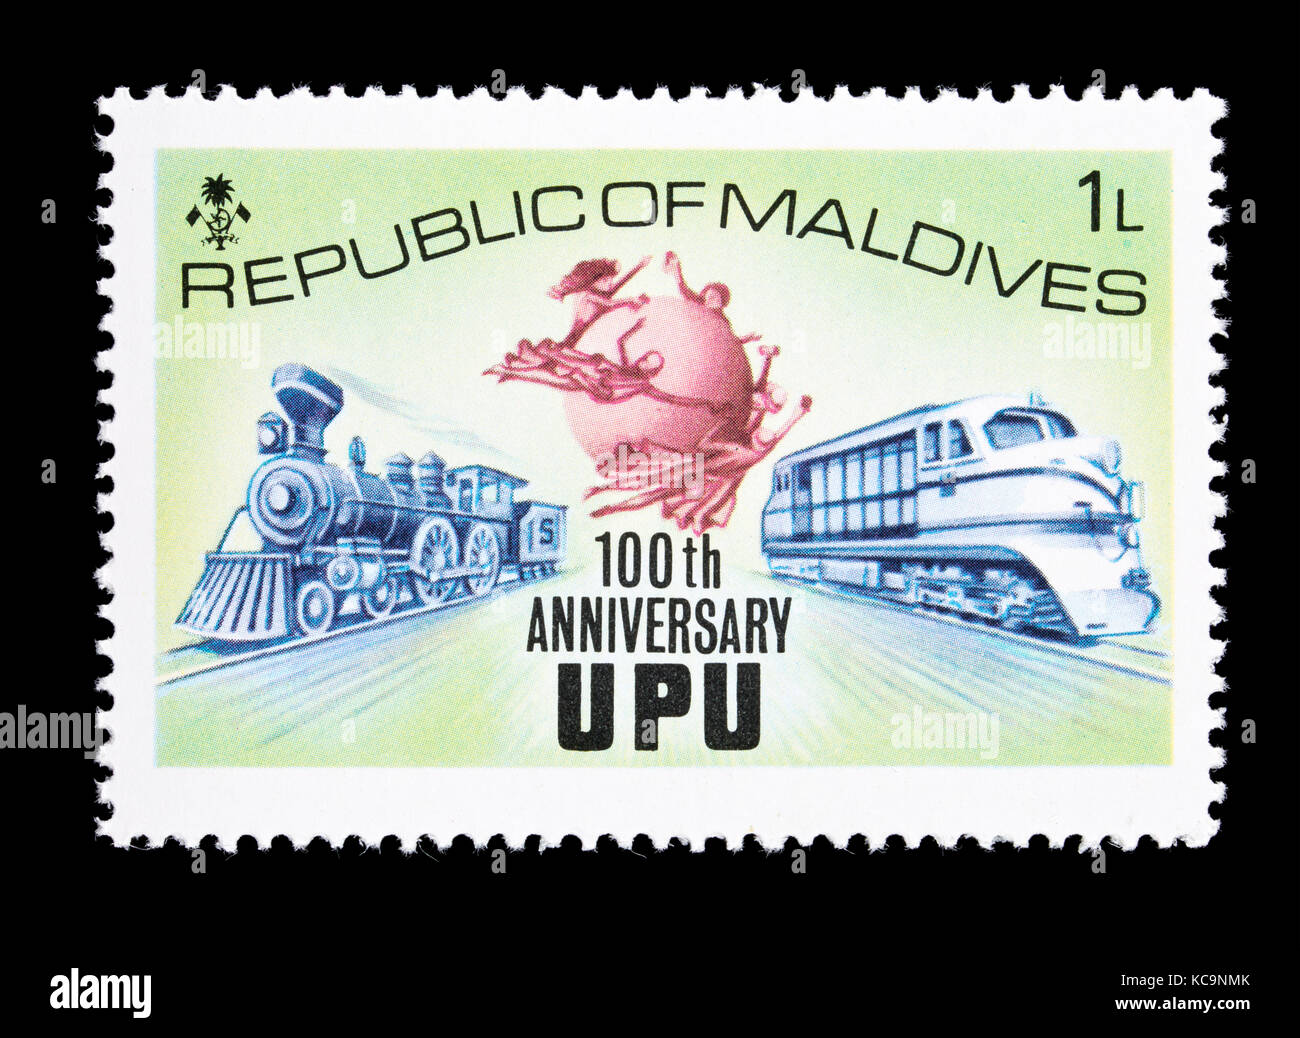 Francobollo da alle Maldive raffigurante un vapore e locomotive diesel, per il centenario dell'Unione postale universale Foto Stock